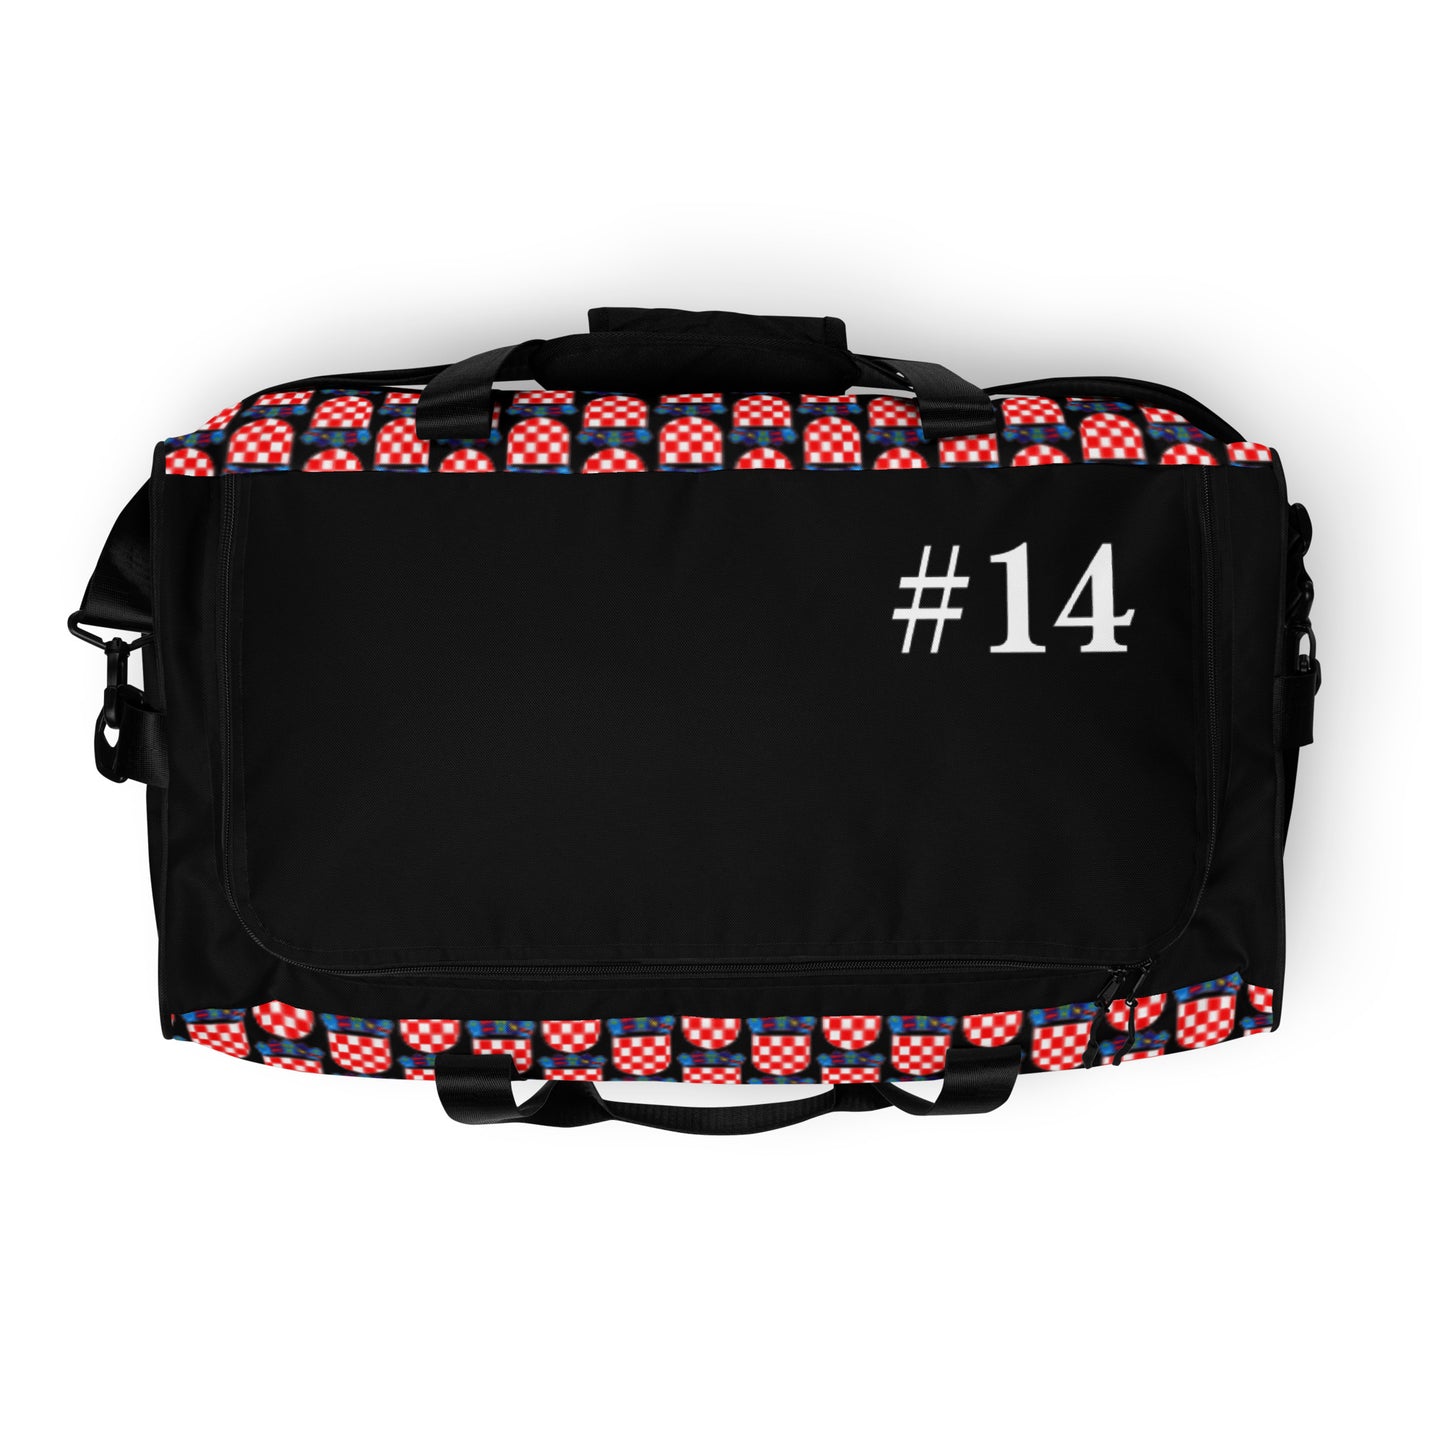 Pro Series : Premium Player number 14 Duffle Bag